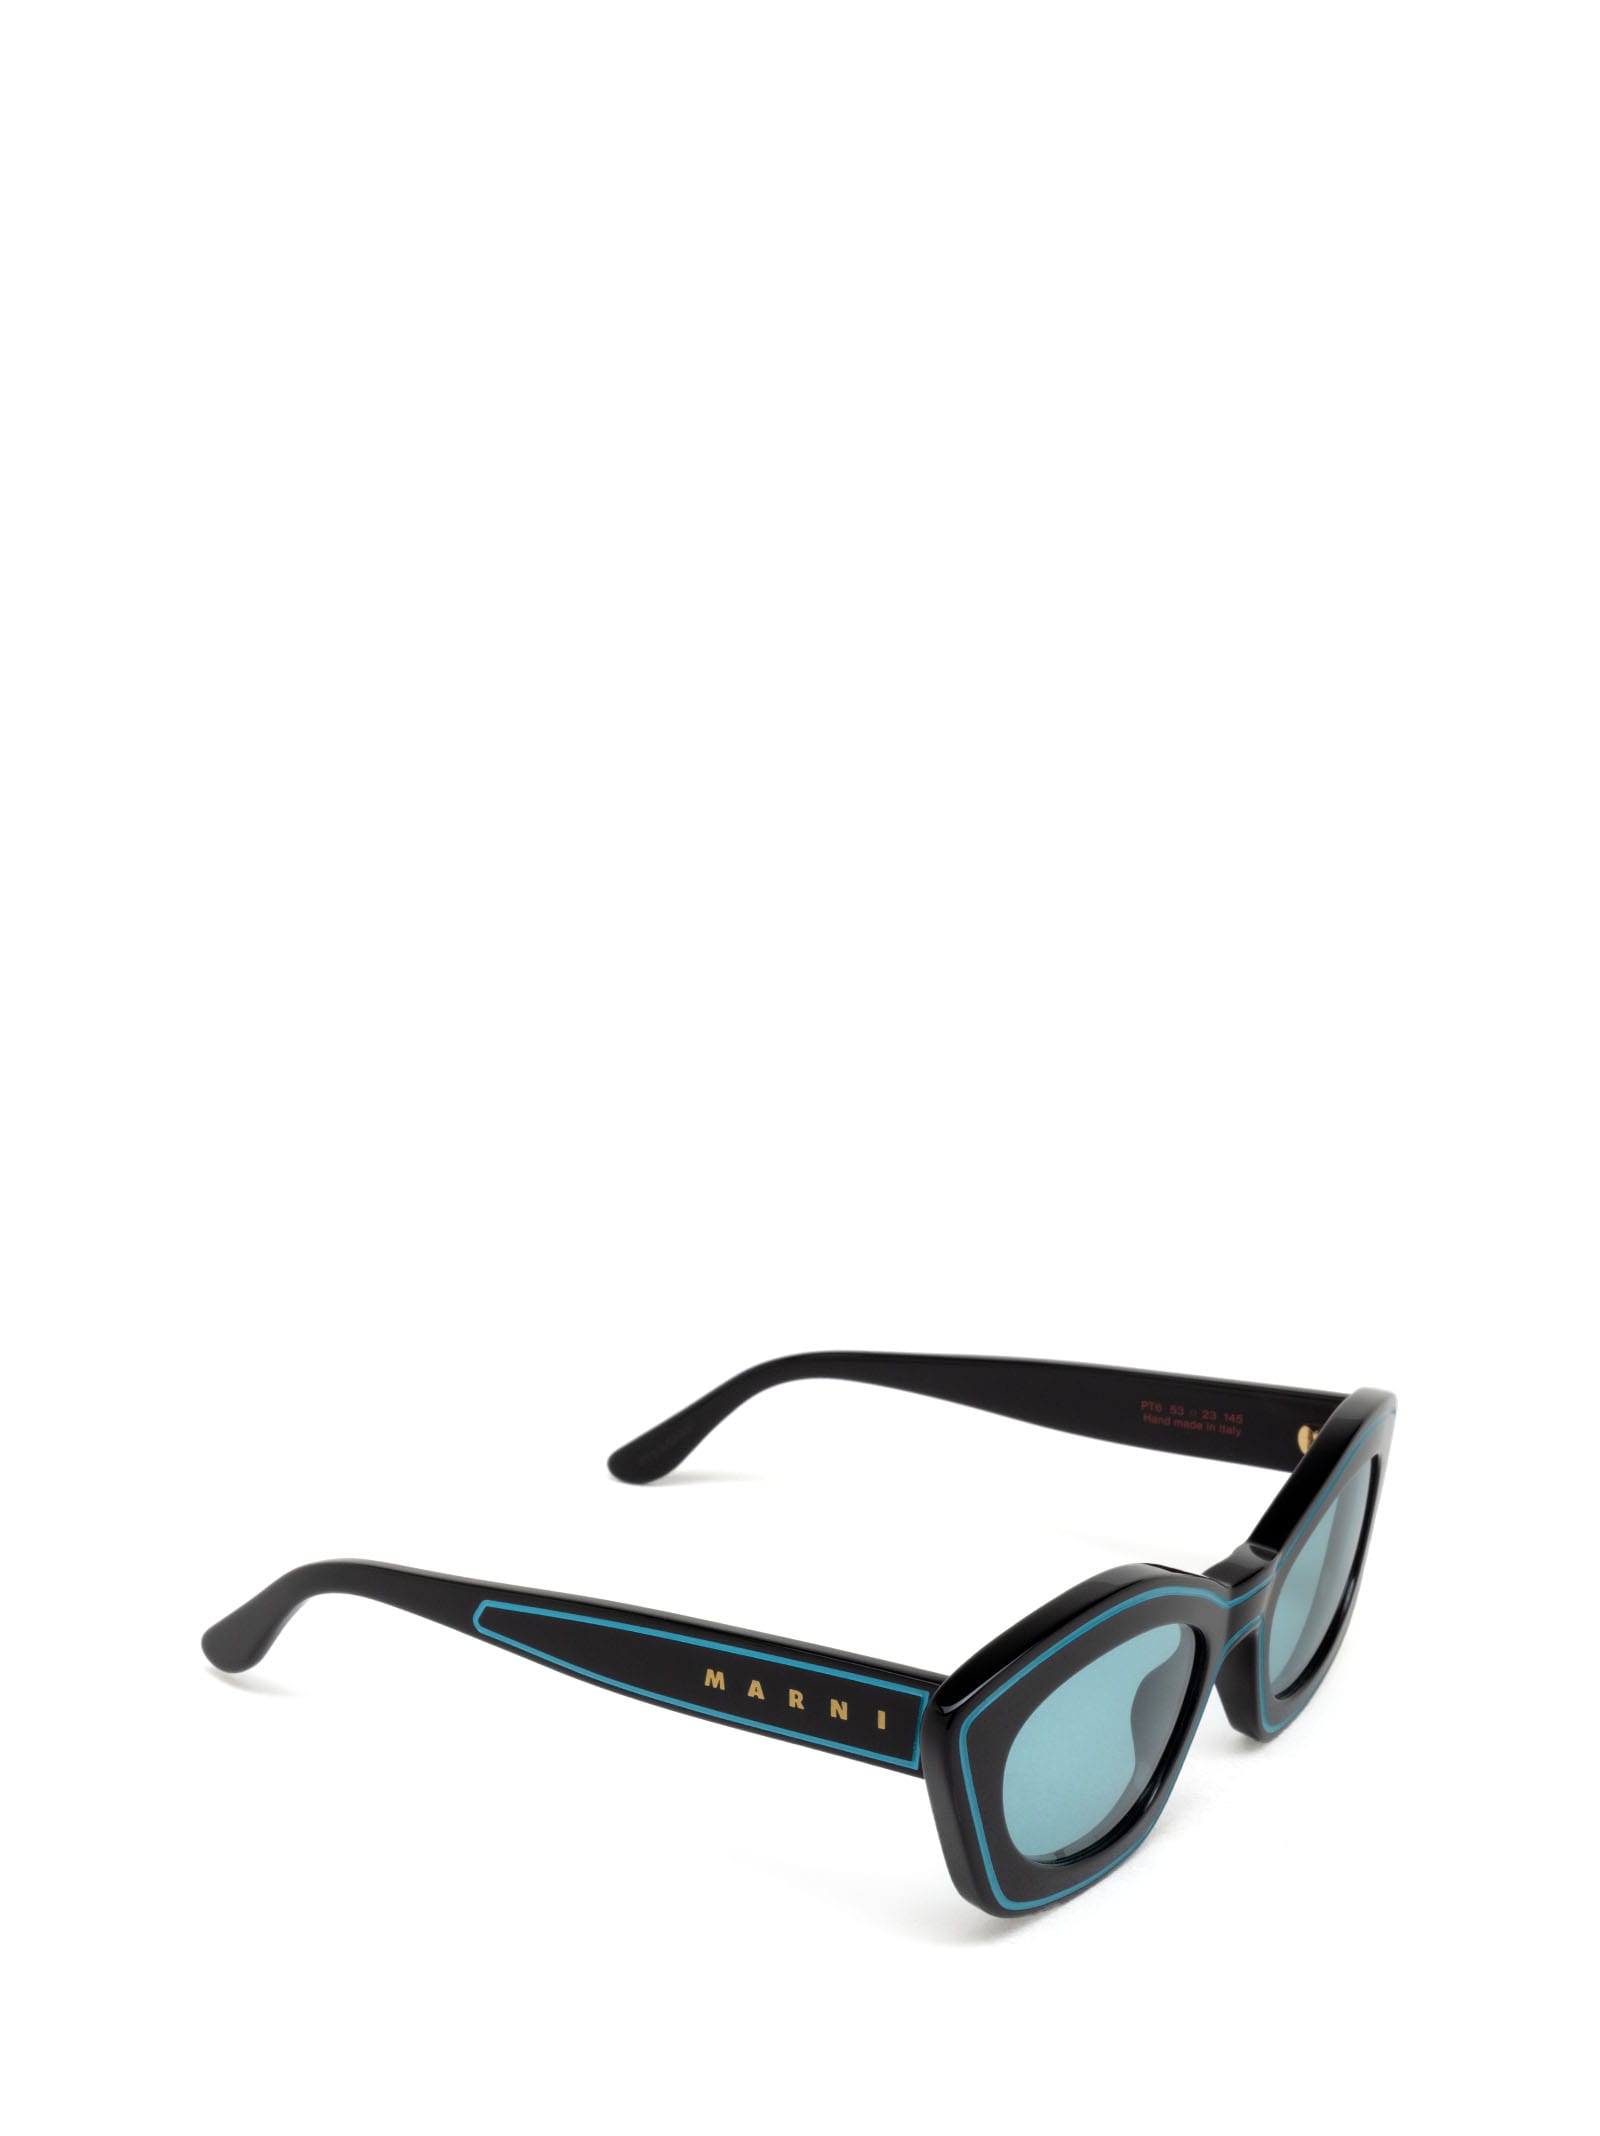 Shop Marni Eyewear Kea Island Teal Teal Sunglasses